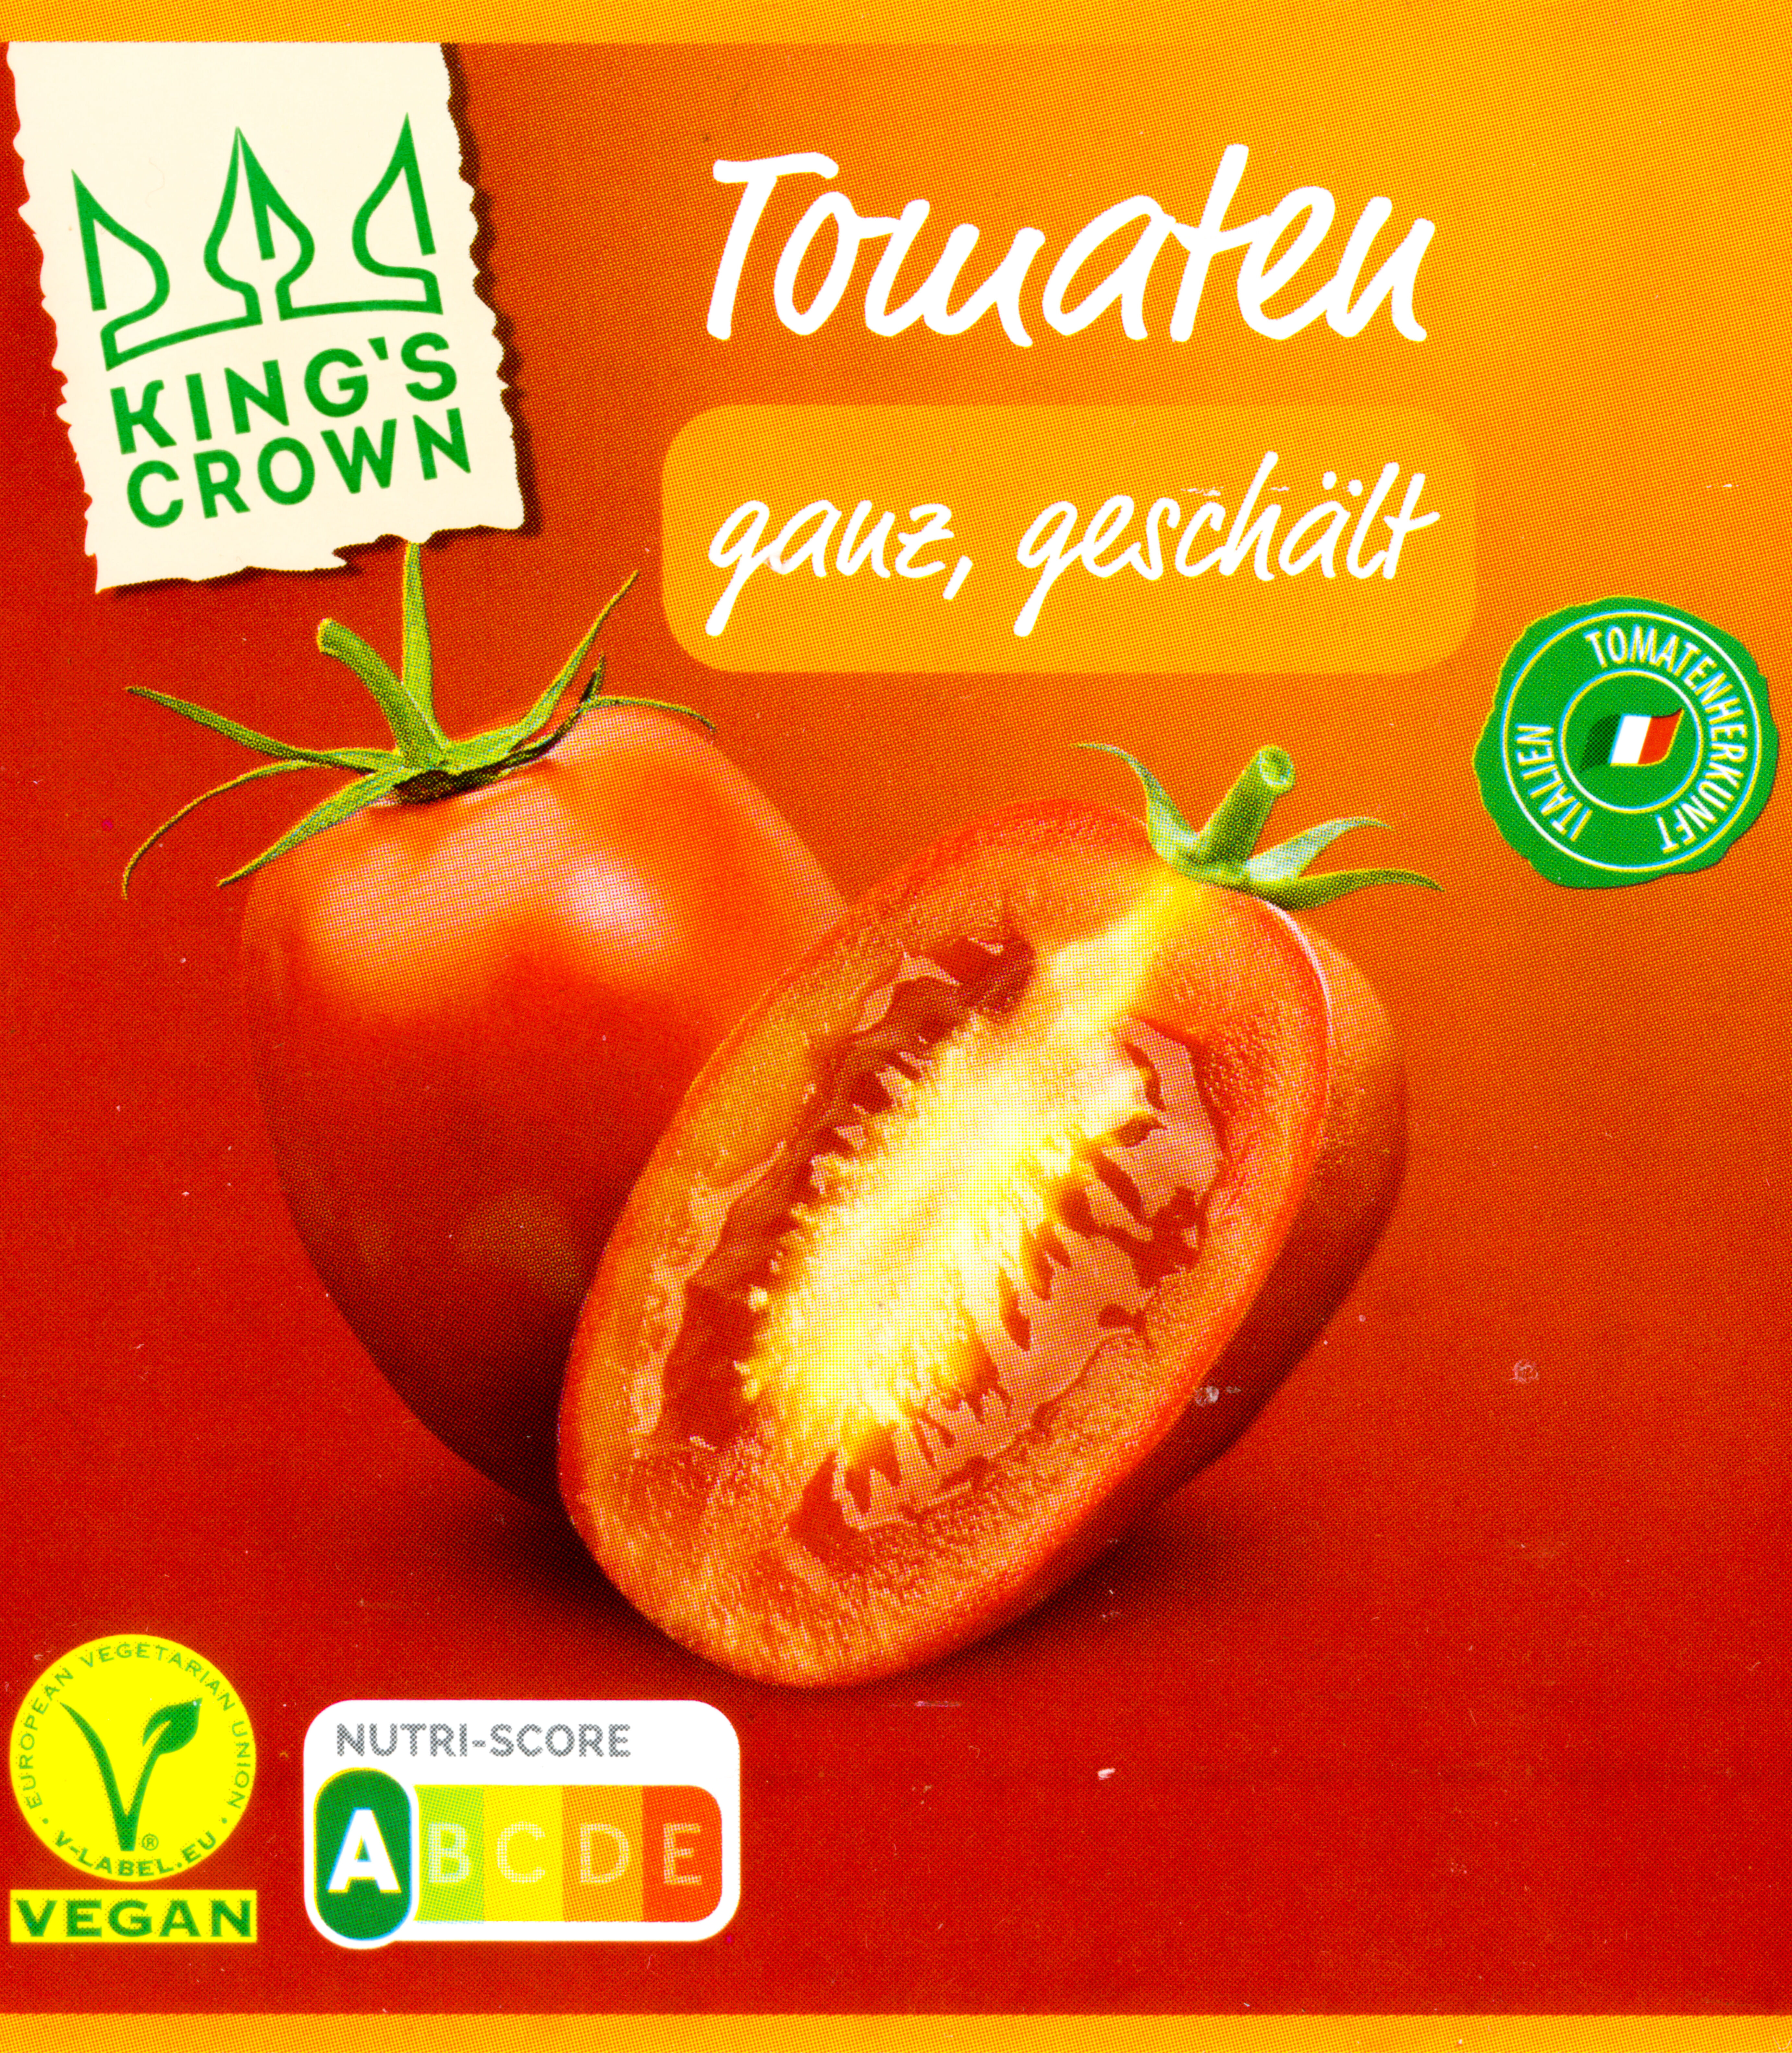 Aldi King's Crown Tomaten ganz geschält - Produkt